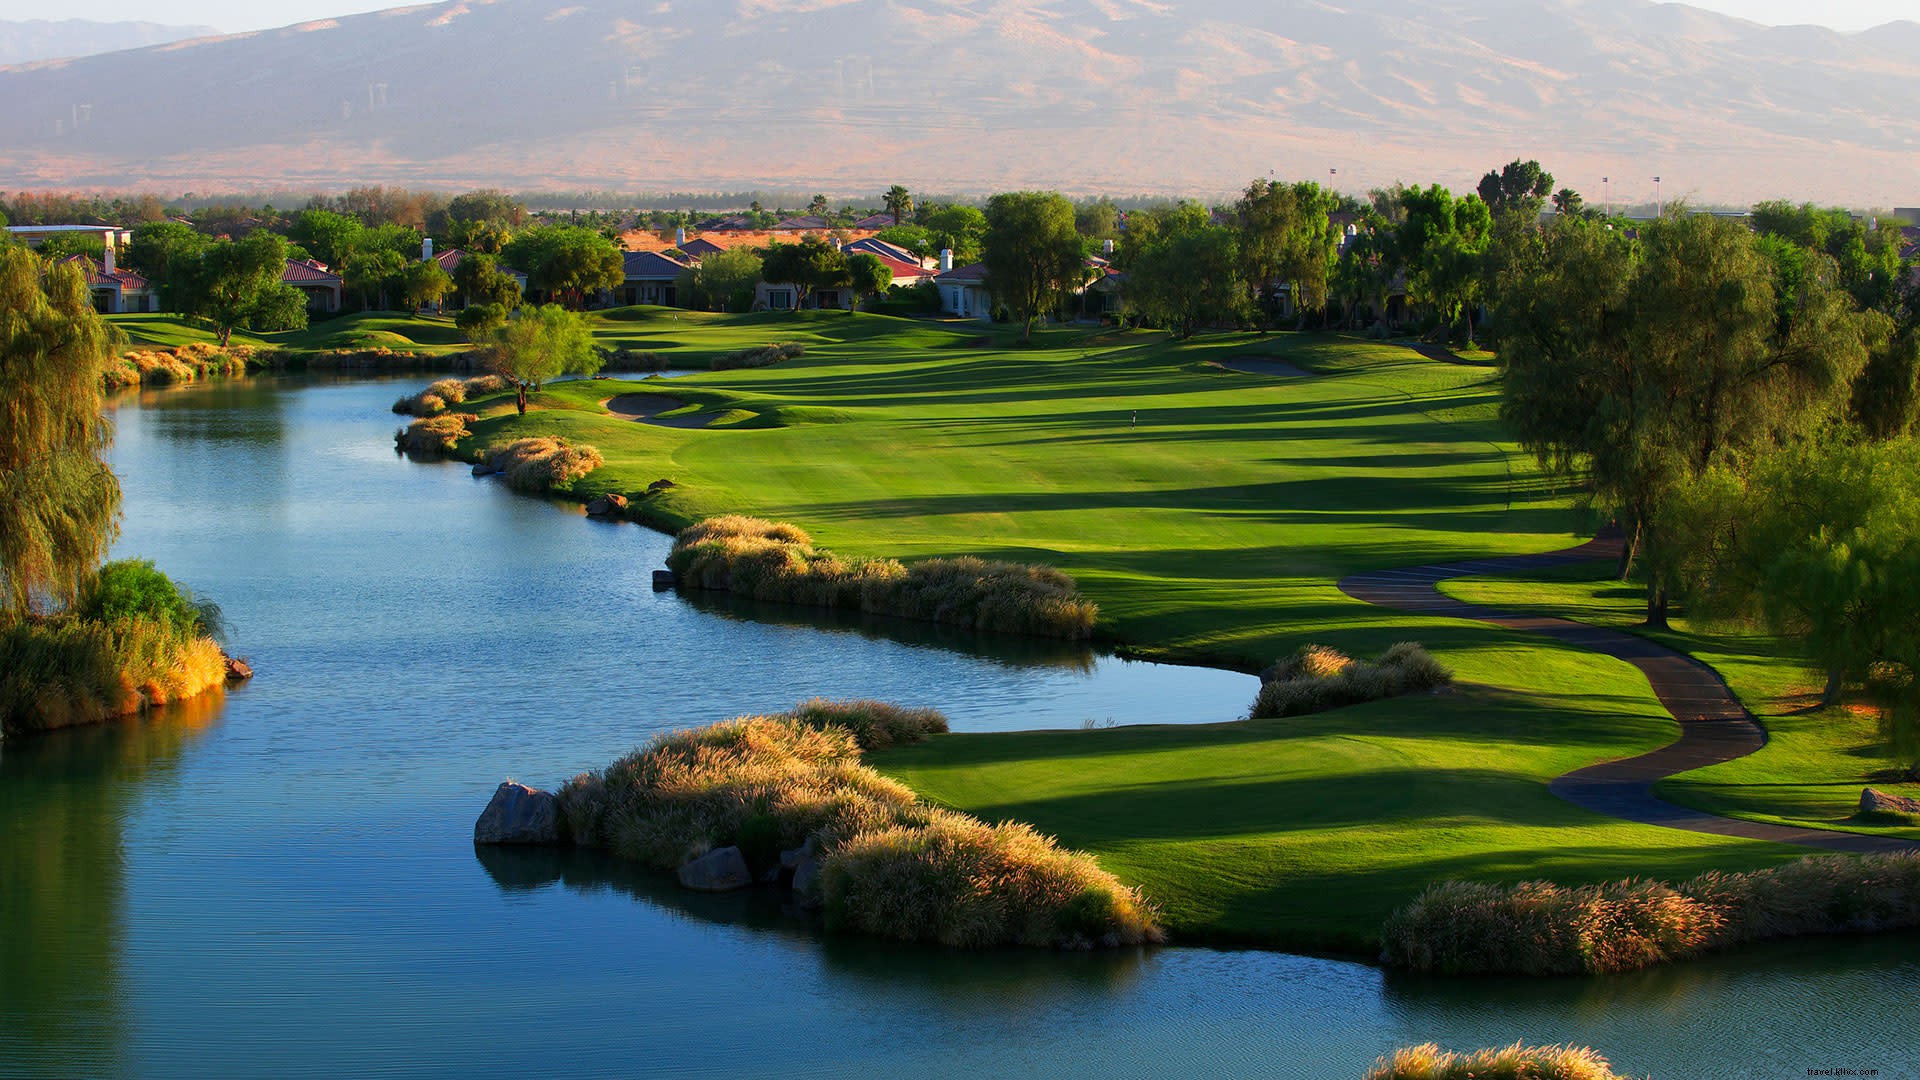 Berdasarkan Desain:Lapangan Golf Greater Palm Springs oleh Arsitek Terkenal 